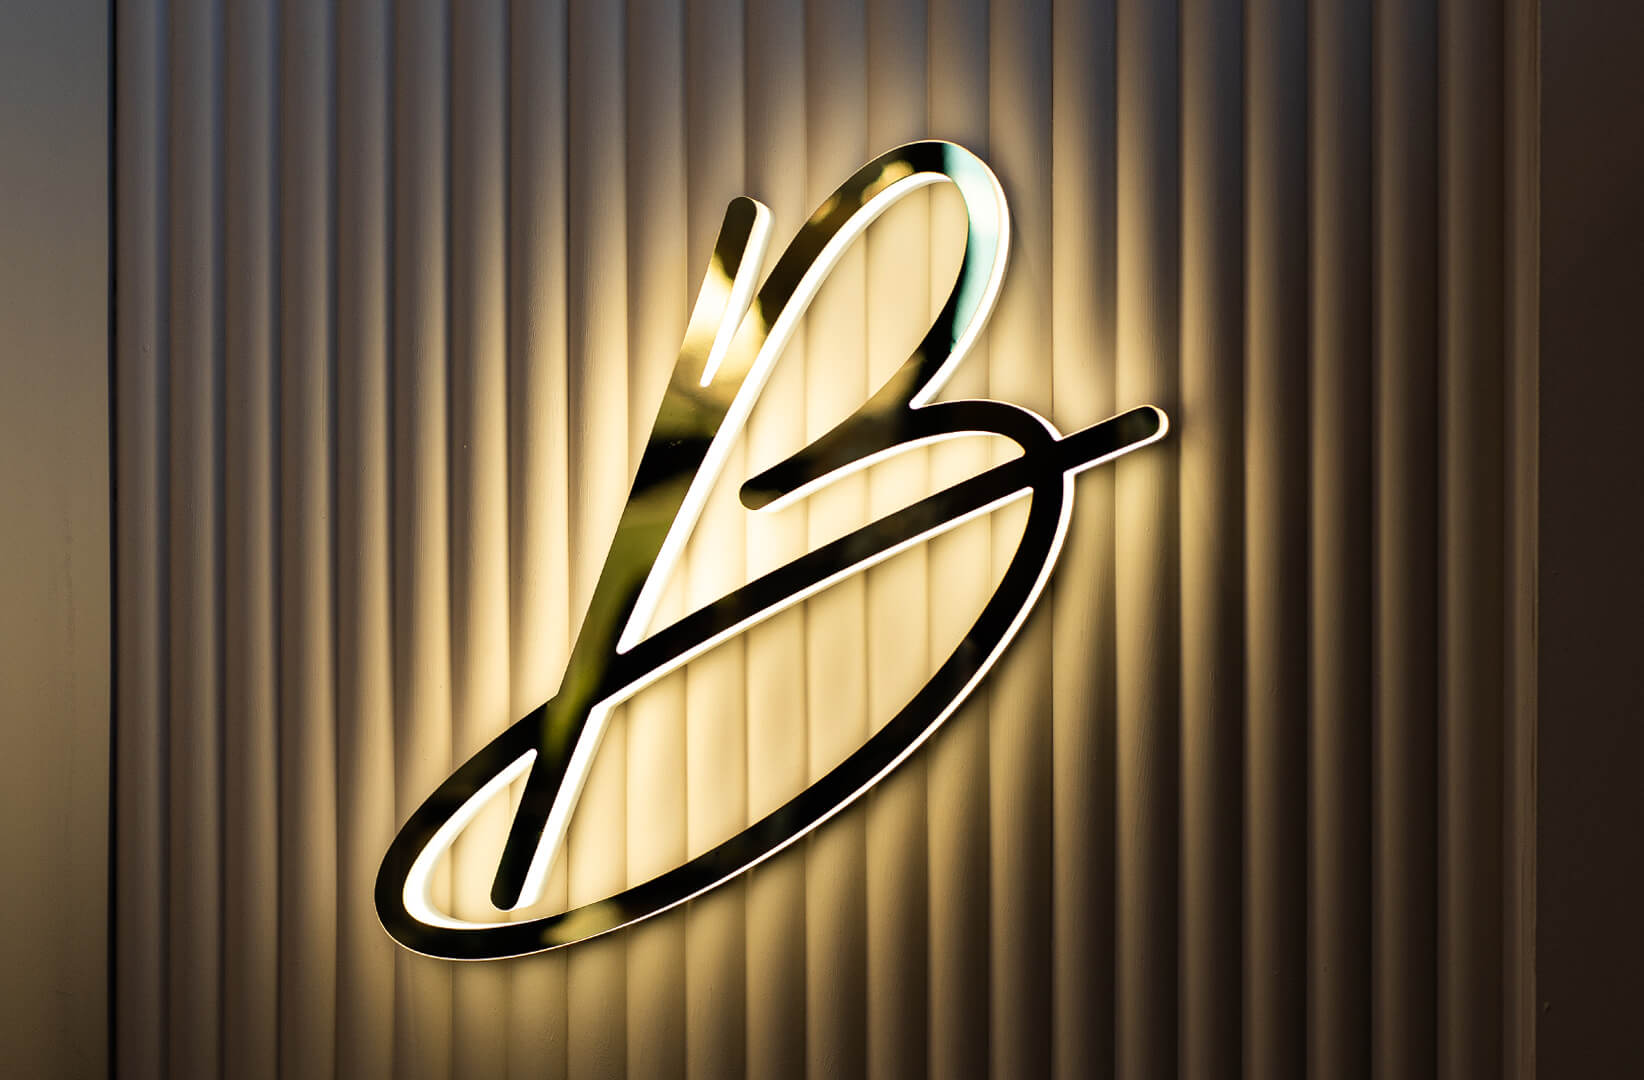 Blushington Letra B - Letra B con el logotipo de Blushington en dorado, iluminado a lo largo del contorno del LED